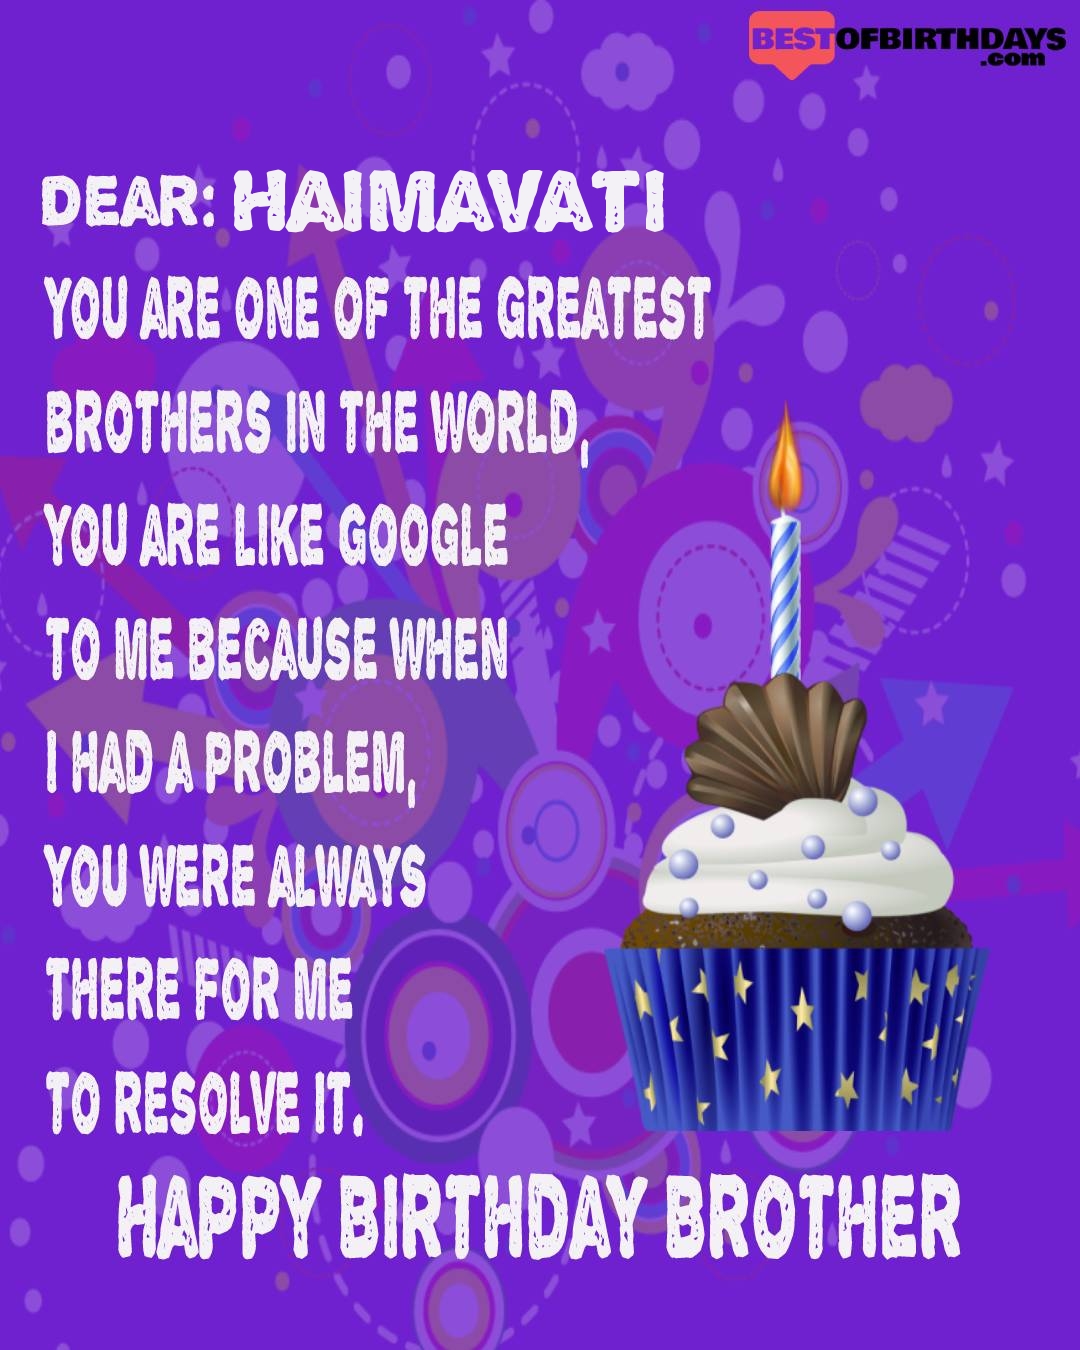 Happy birthday haimavati bhai brother bro